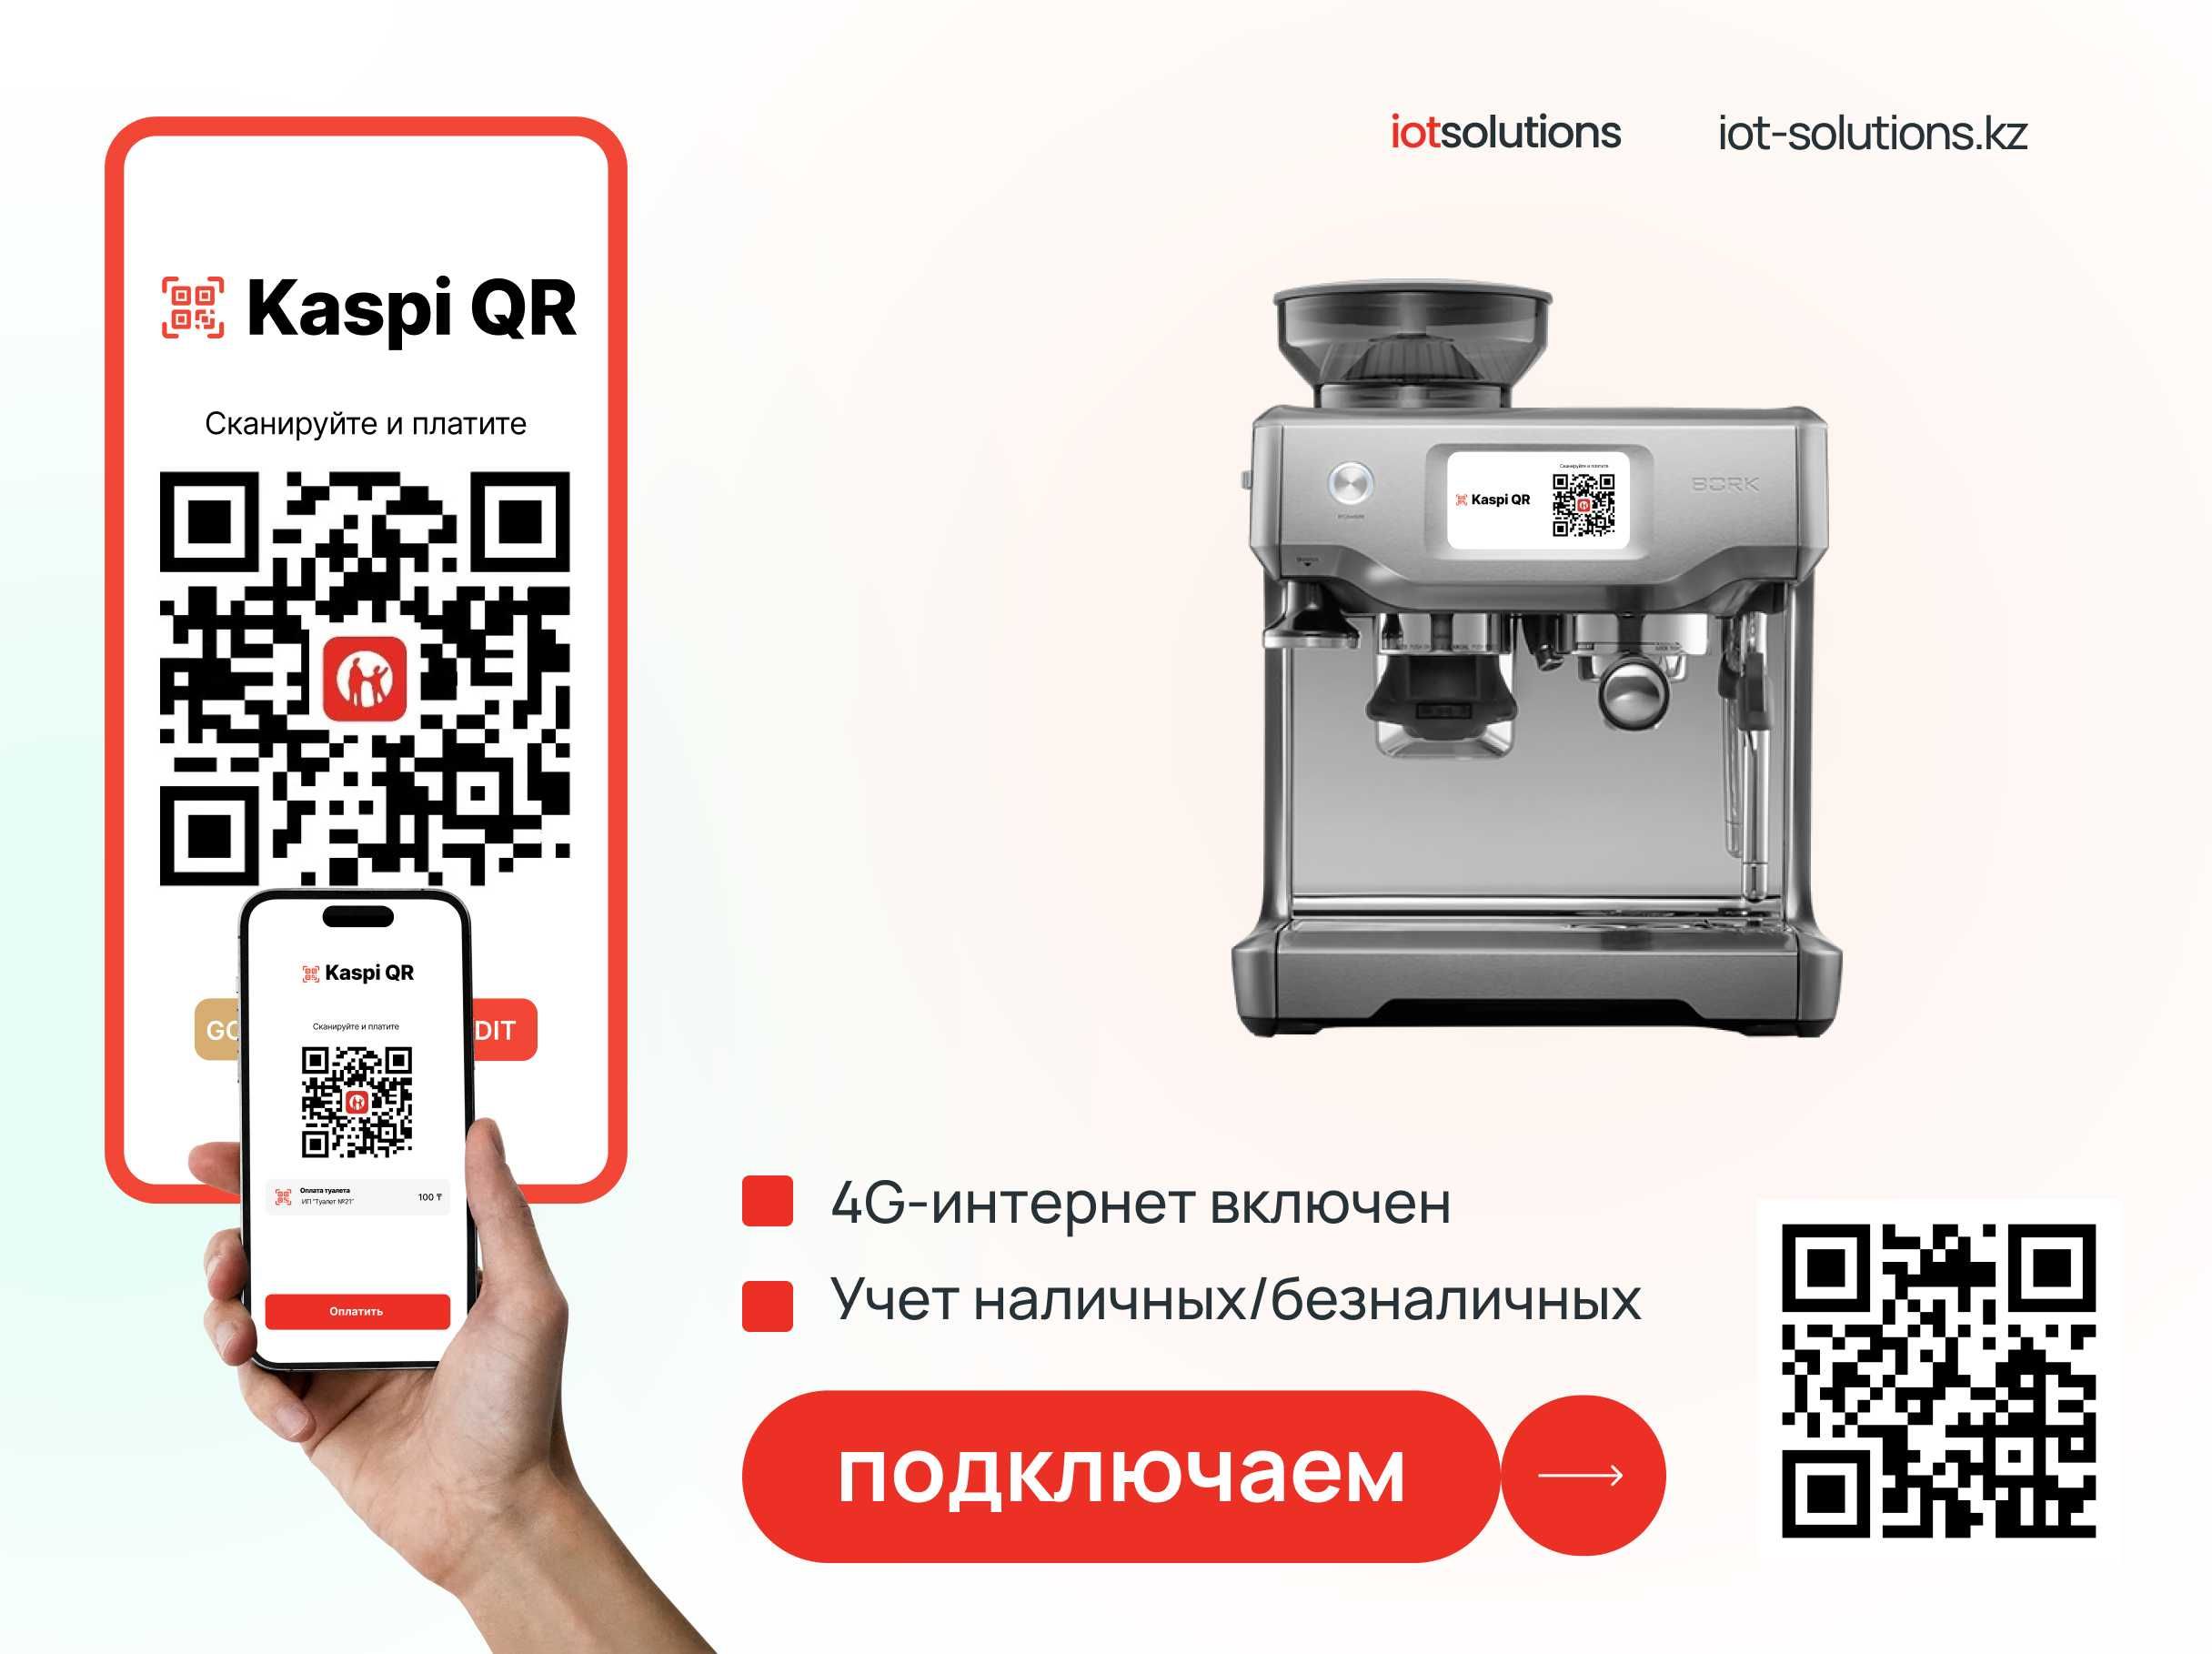 Вендинг аппарат самообслуживания - Кофеаппарат - Водомат - Силомер